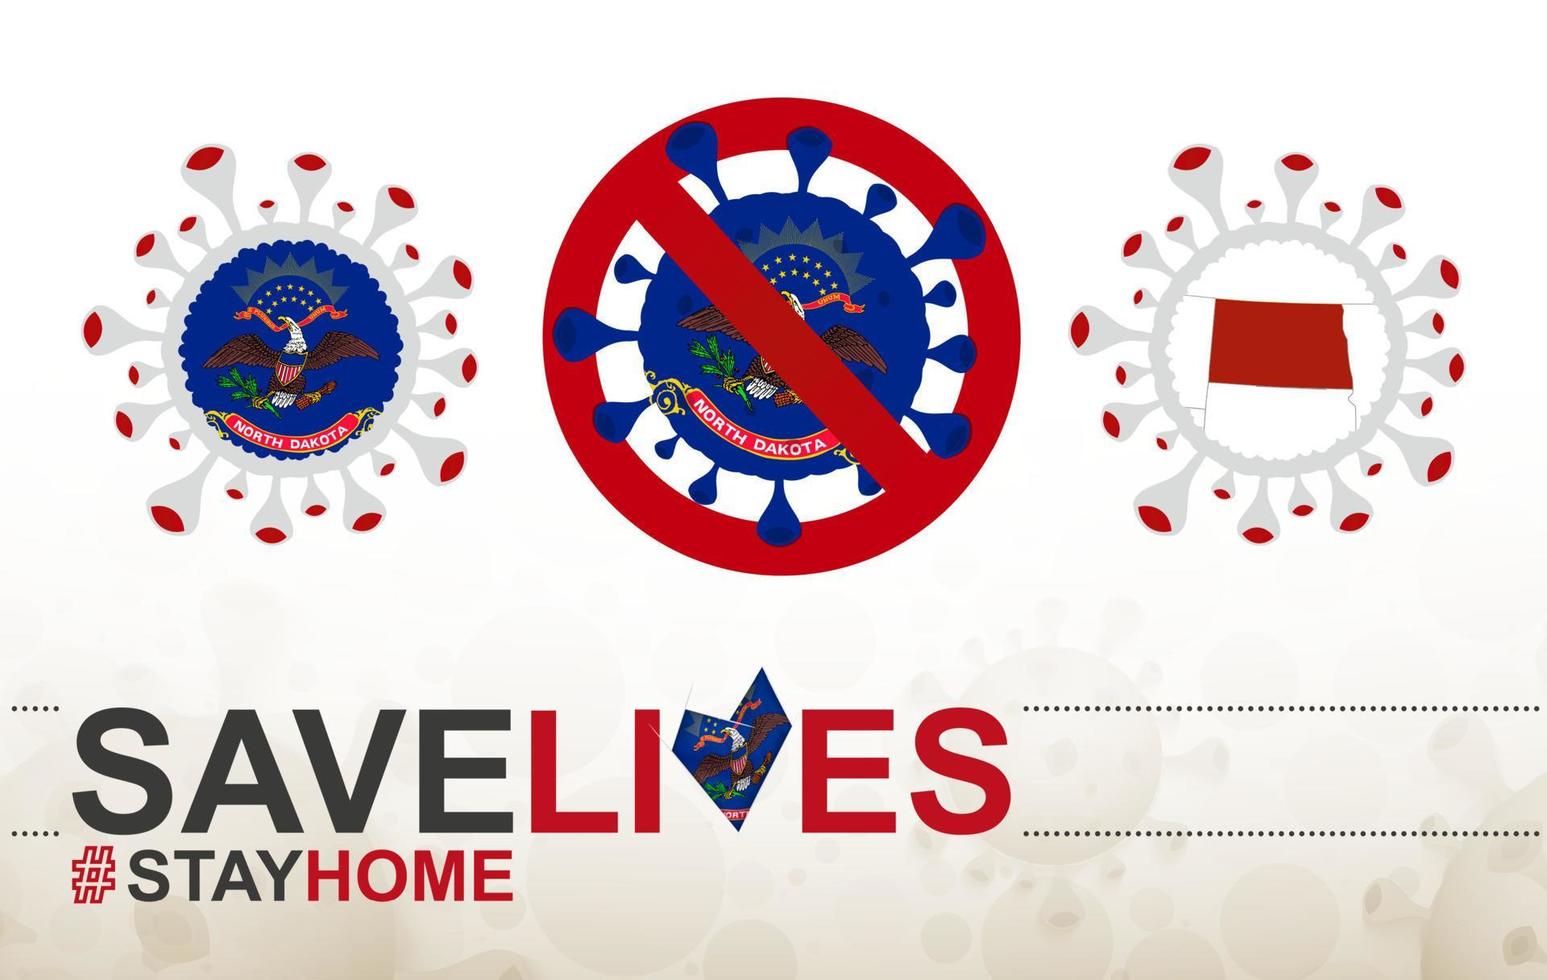 coronaviruscel bij ons staat de vlag en kaart van noord-dakota. stop covid-19 teken, slogan red levens blijf thuis met vlag van noord-dakota vector